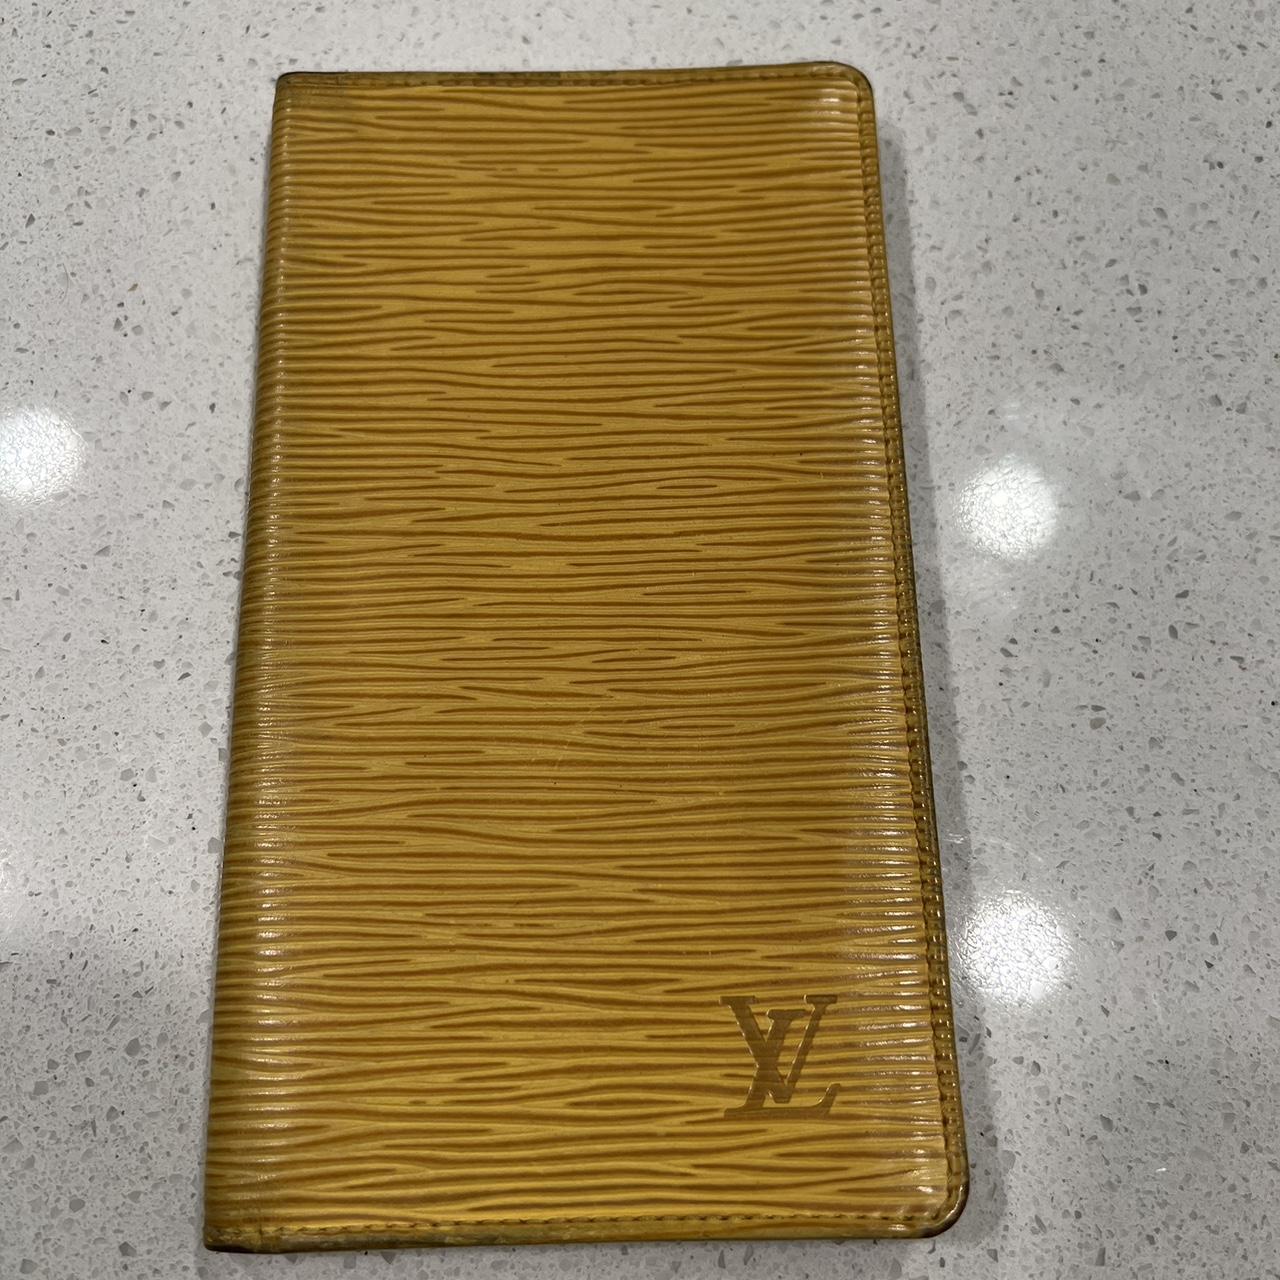 Authentic Louis Vuitton Wallet, excellent used - Depop